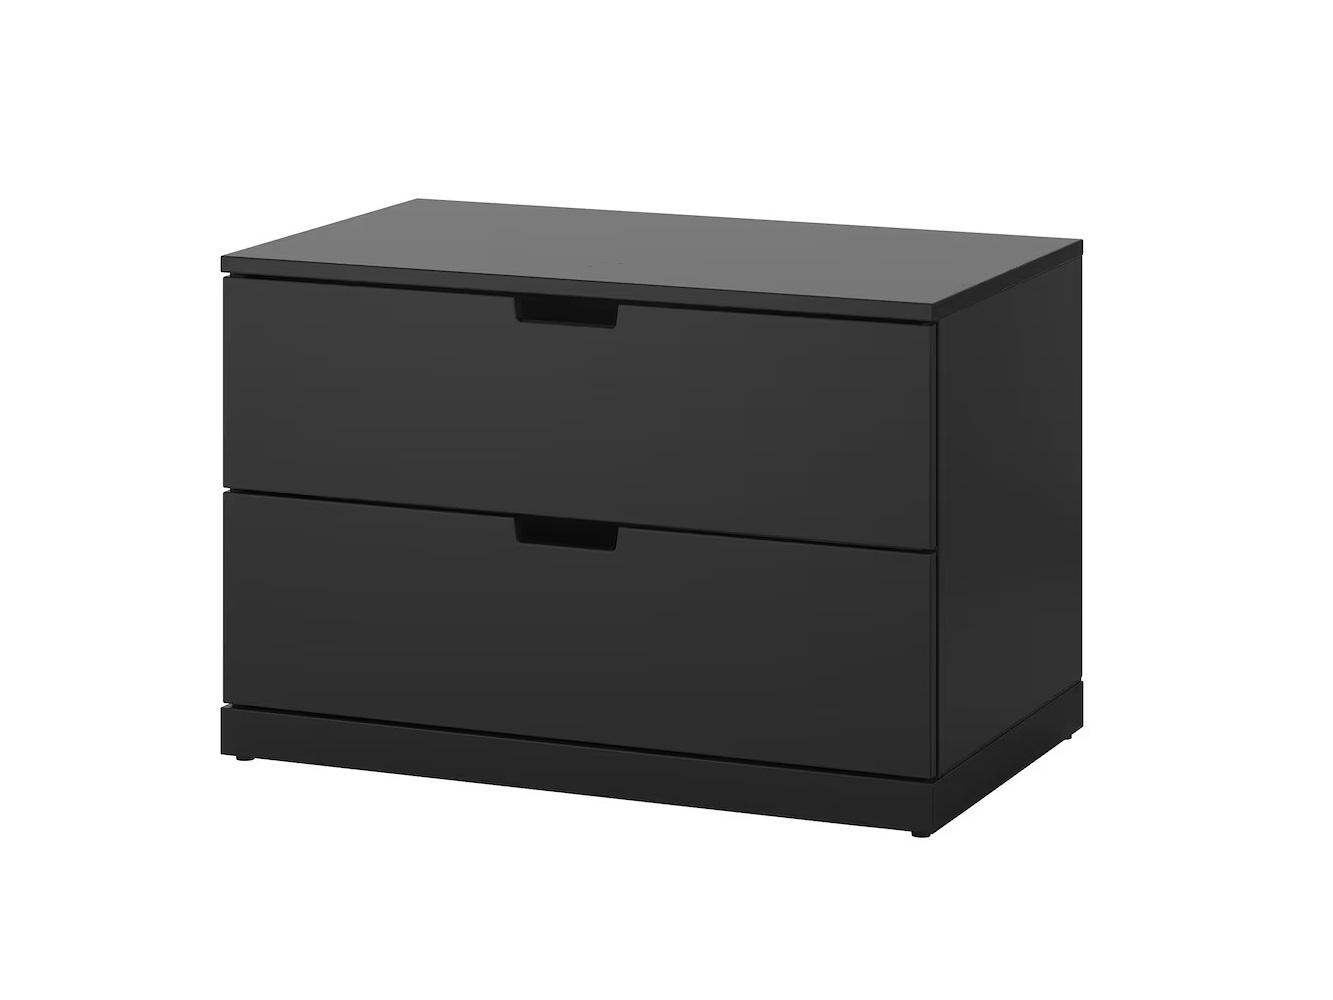 Комод Нордли 43 black ИКЕА (IKEA) изображение товара